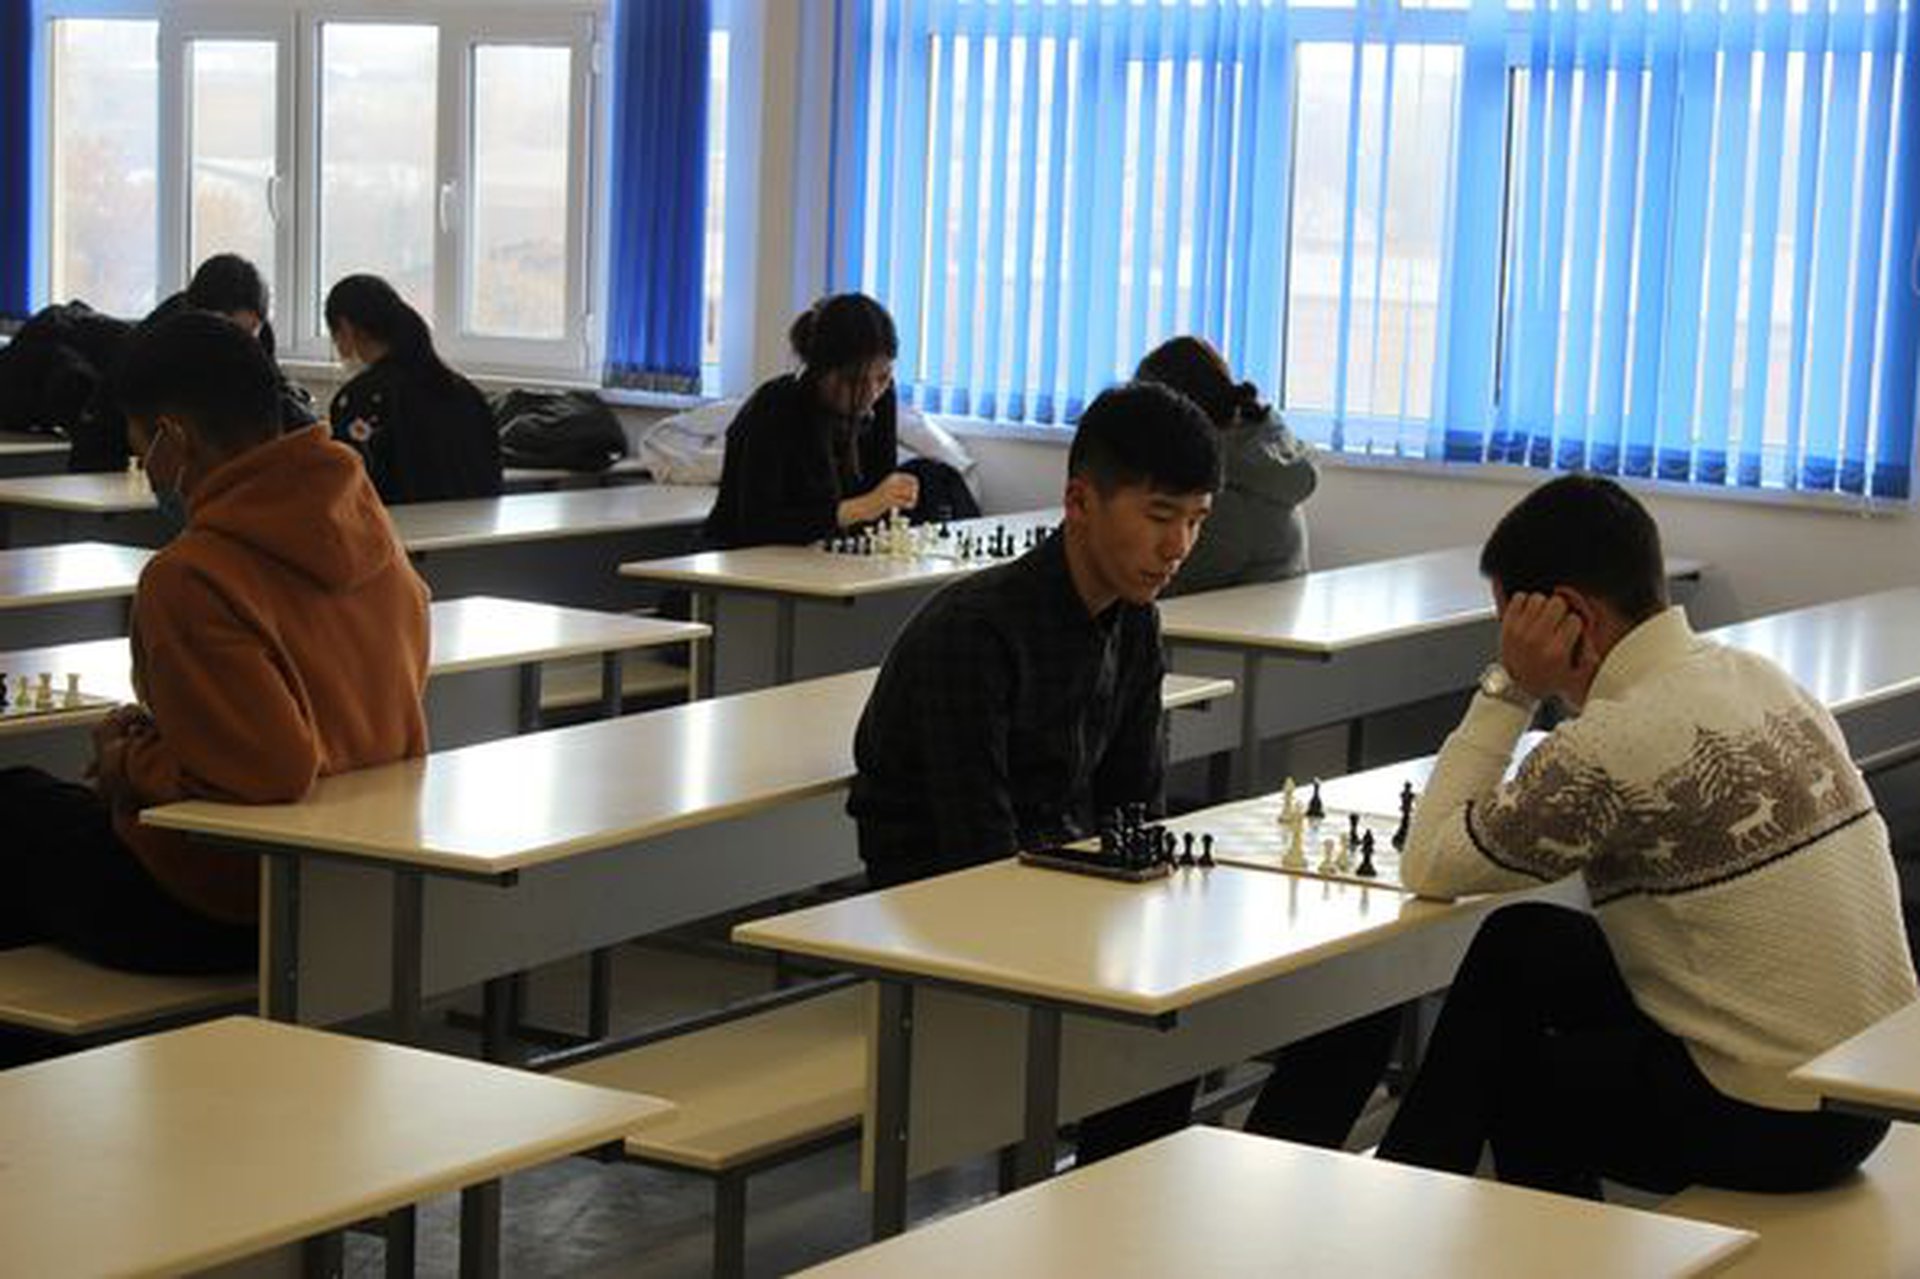 В университете "Адам" состоялся шахматный турнир